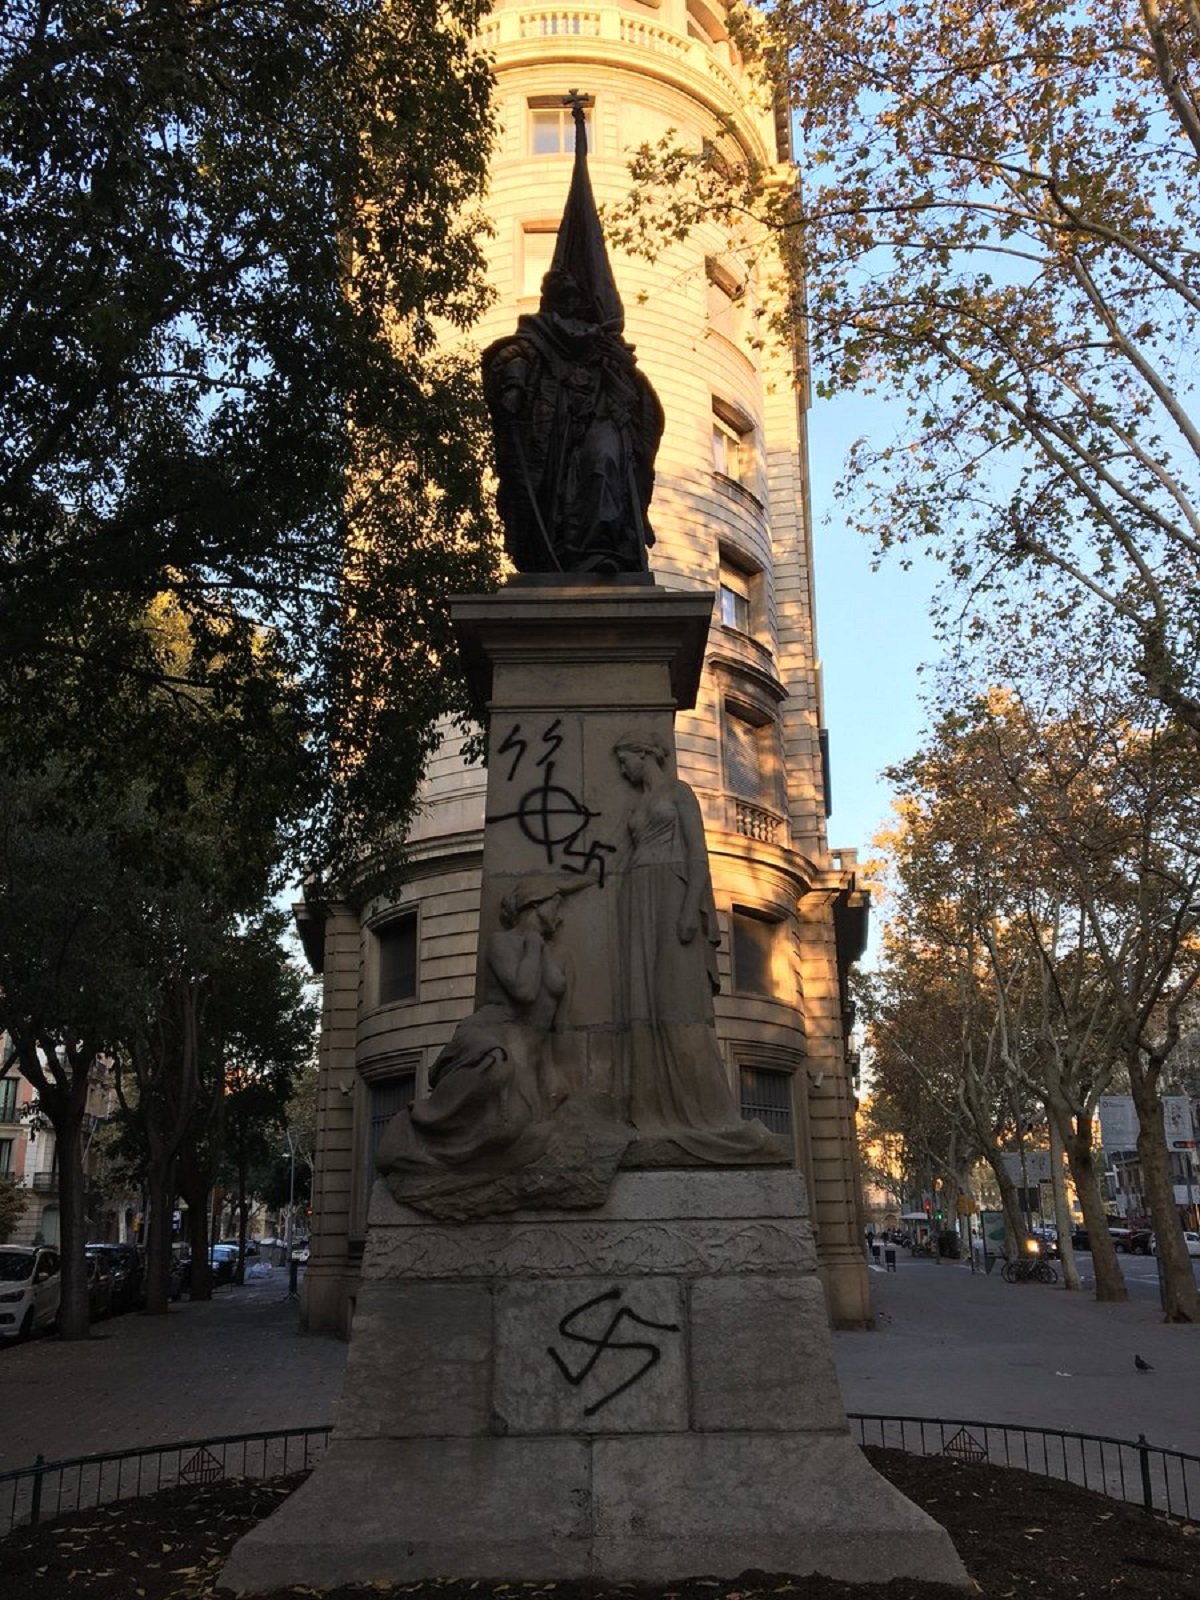 Atac ultra al monument a Rafael Casanova